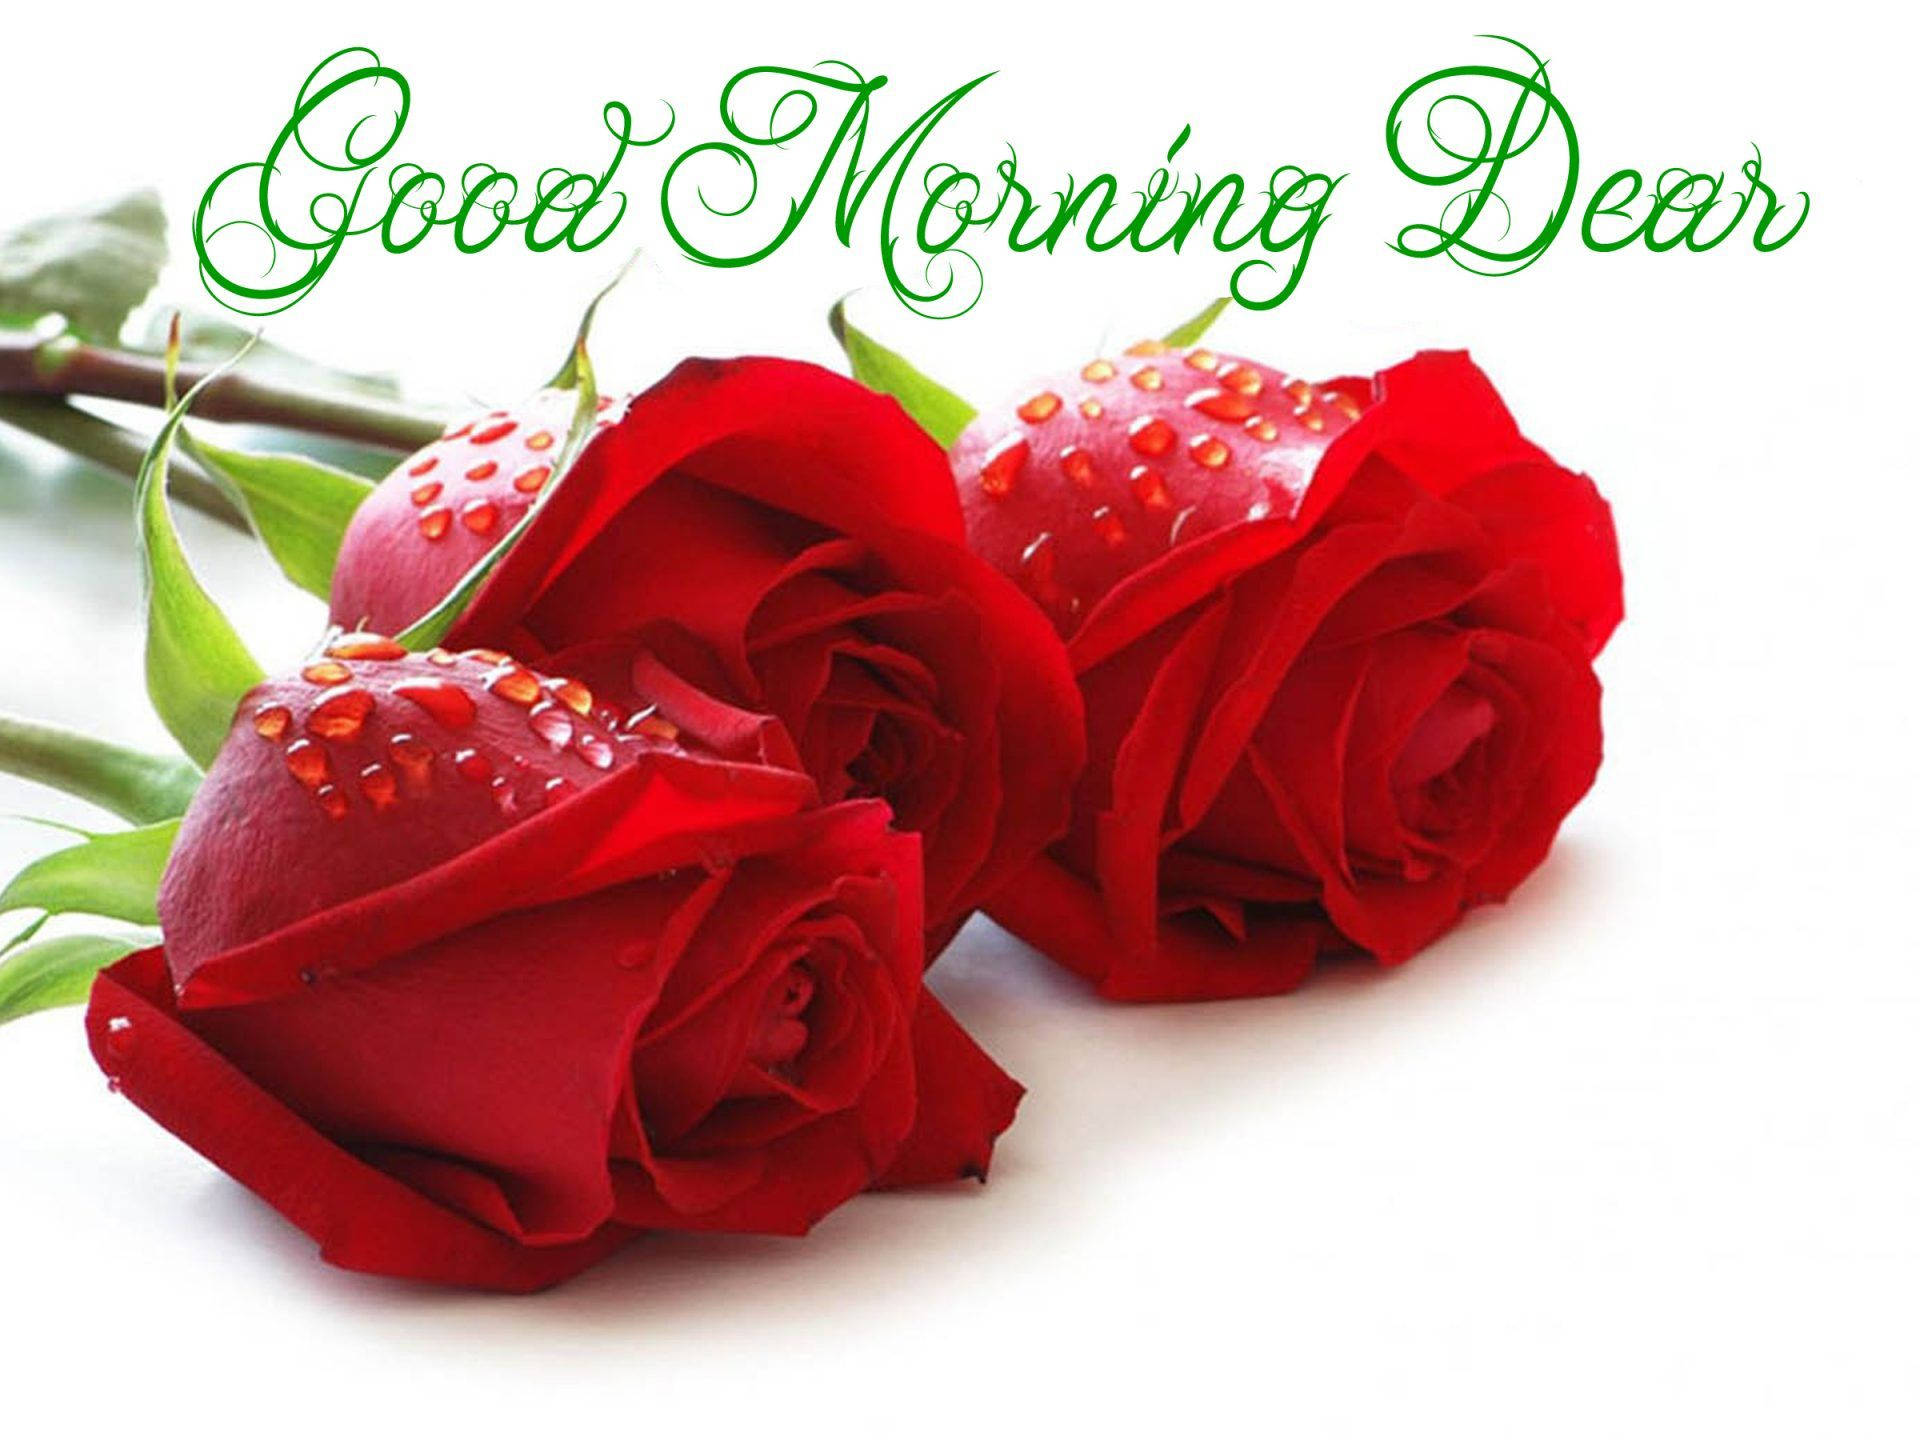 Good Morning Dear Roses